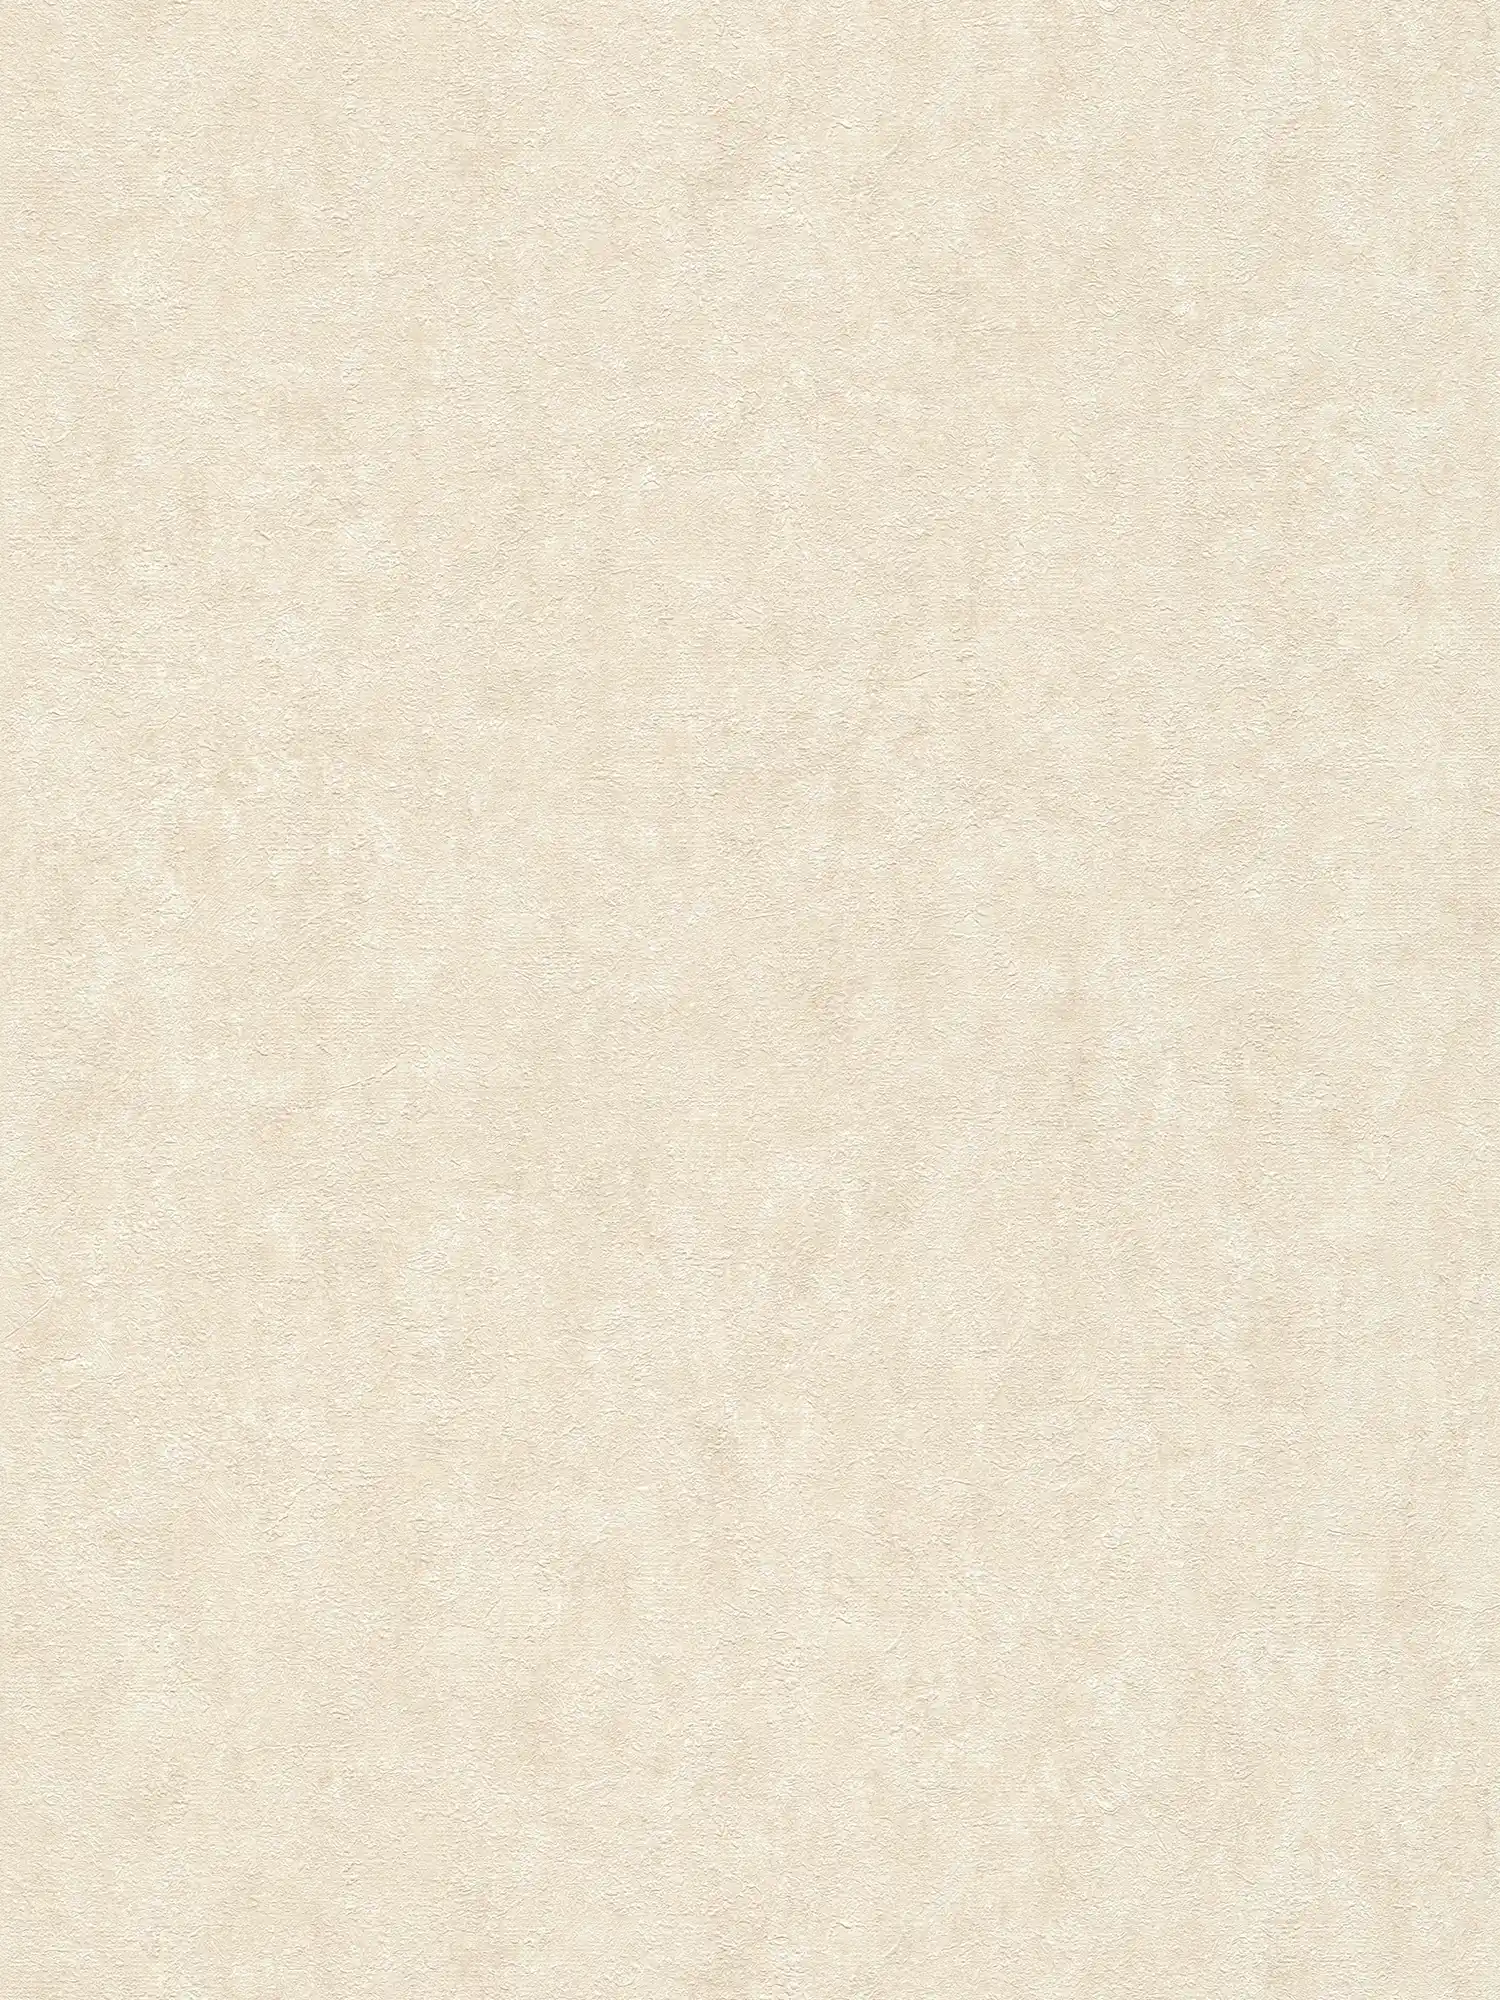 Carta da parati testurizzata in tessuto non tessuto screziato avorio - bianco, grigio, crema
